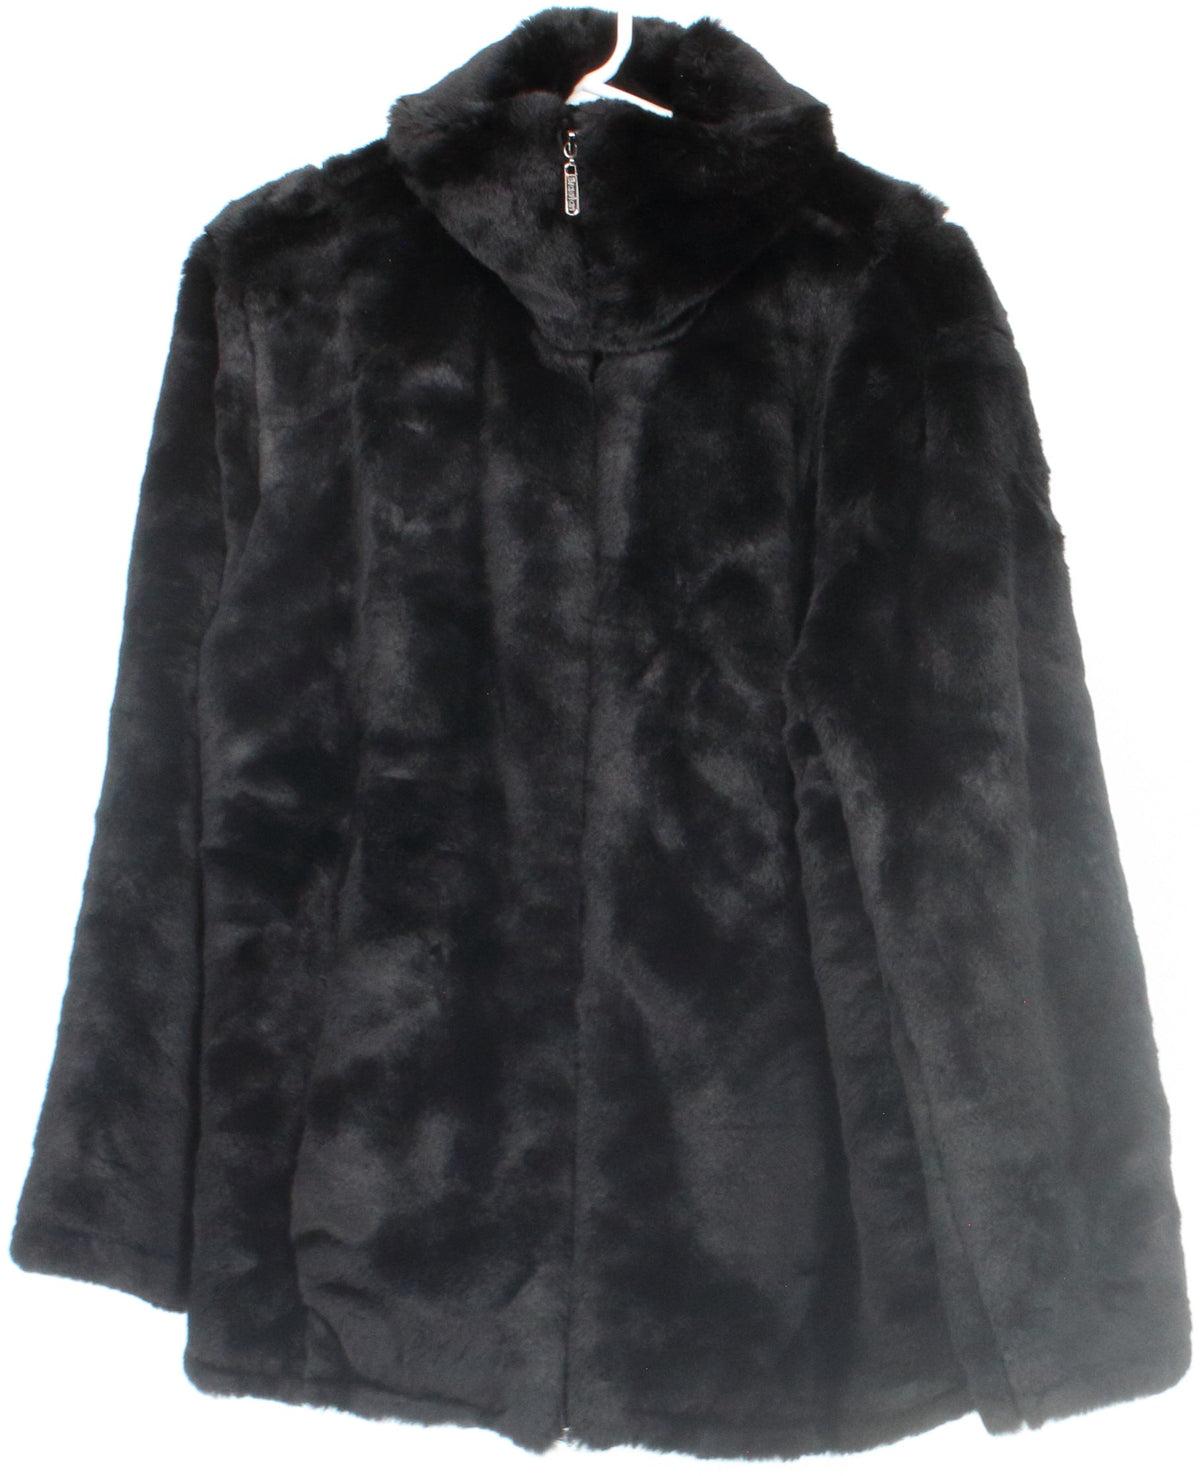 Braetan Black Faux Fur Coat